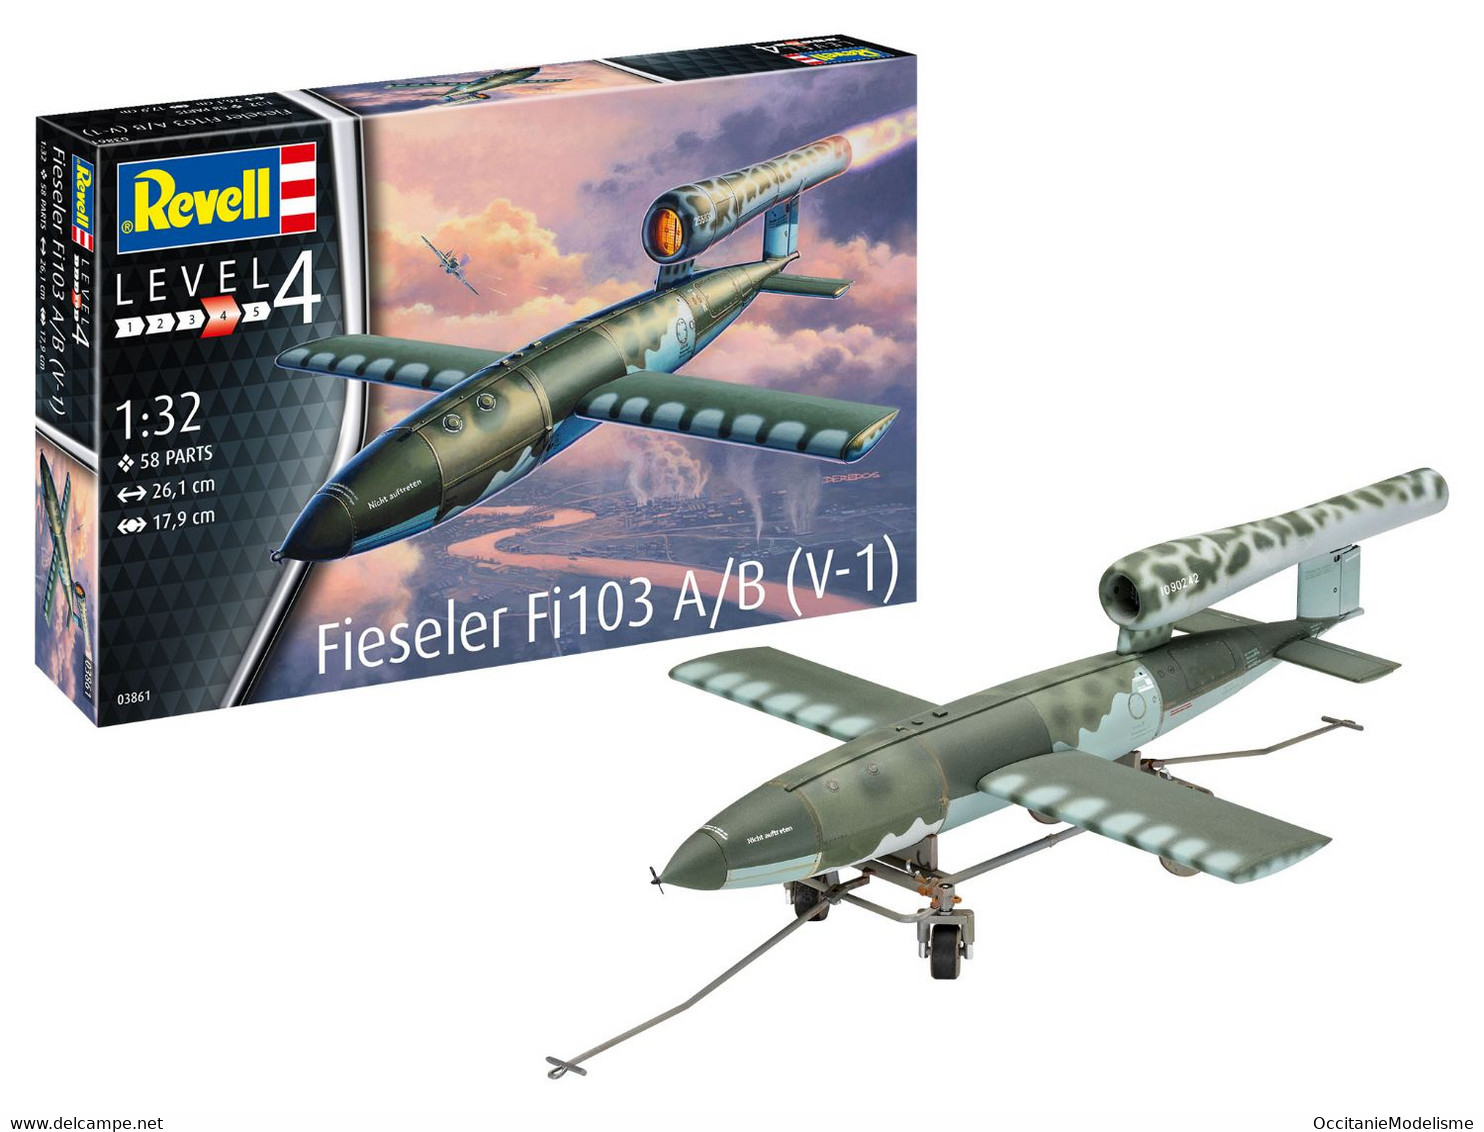 Revell - FIESELER Fi103 A/B V-1 Maquette Kit Plastique Réf. 03861 Neuf NBO 1/32 - Avions